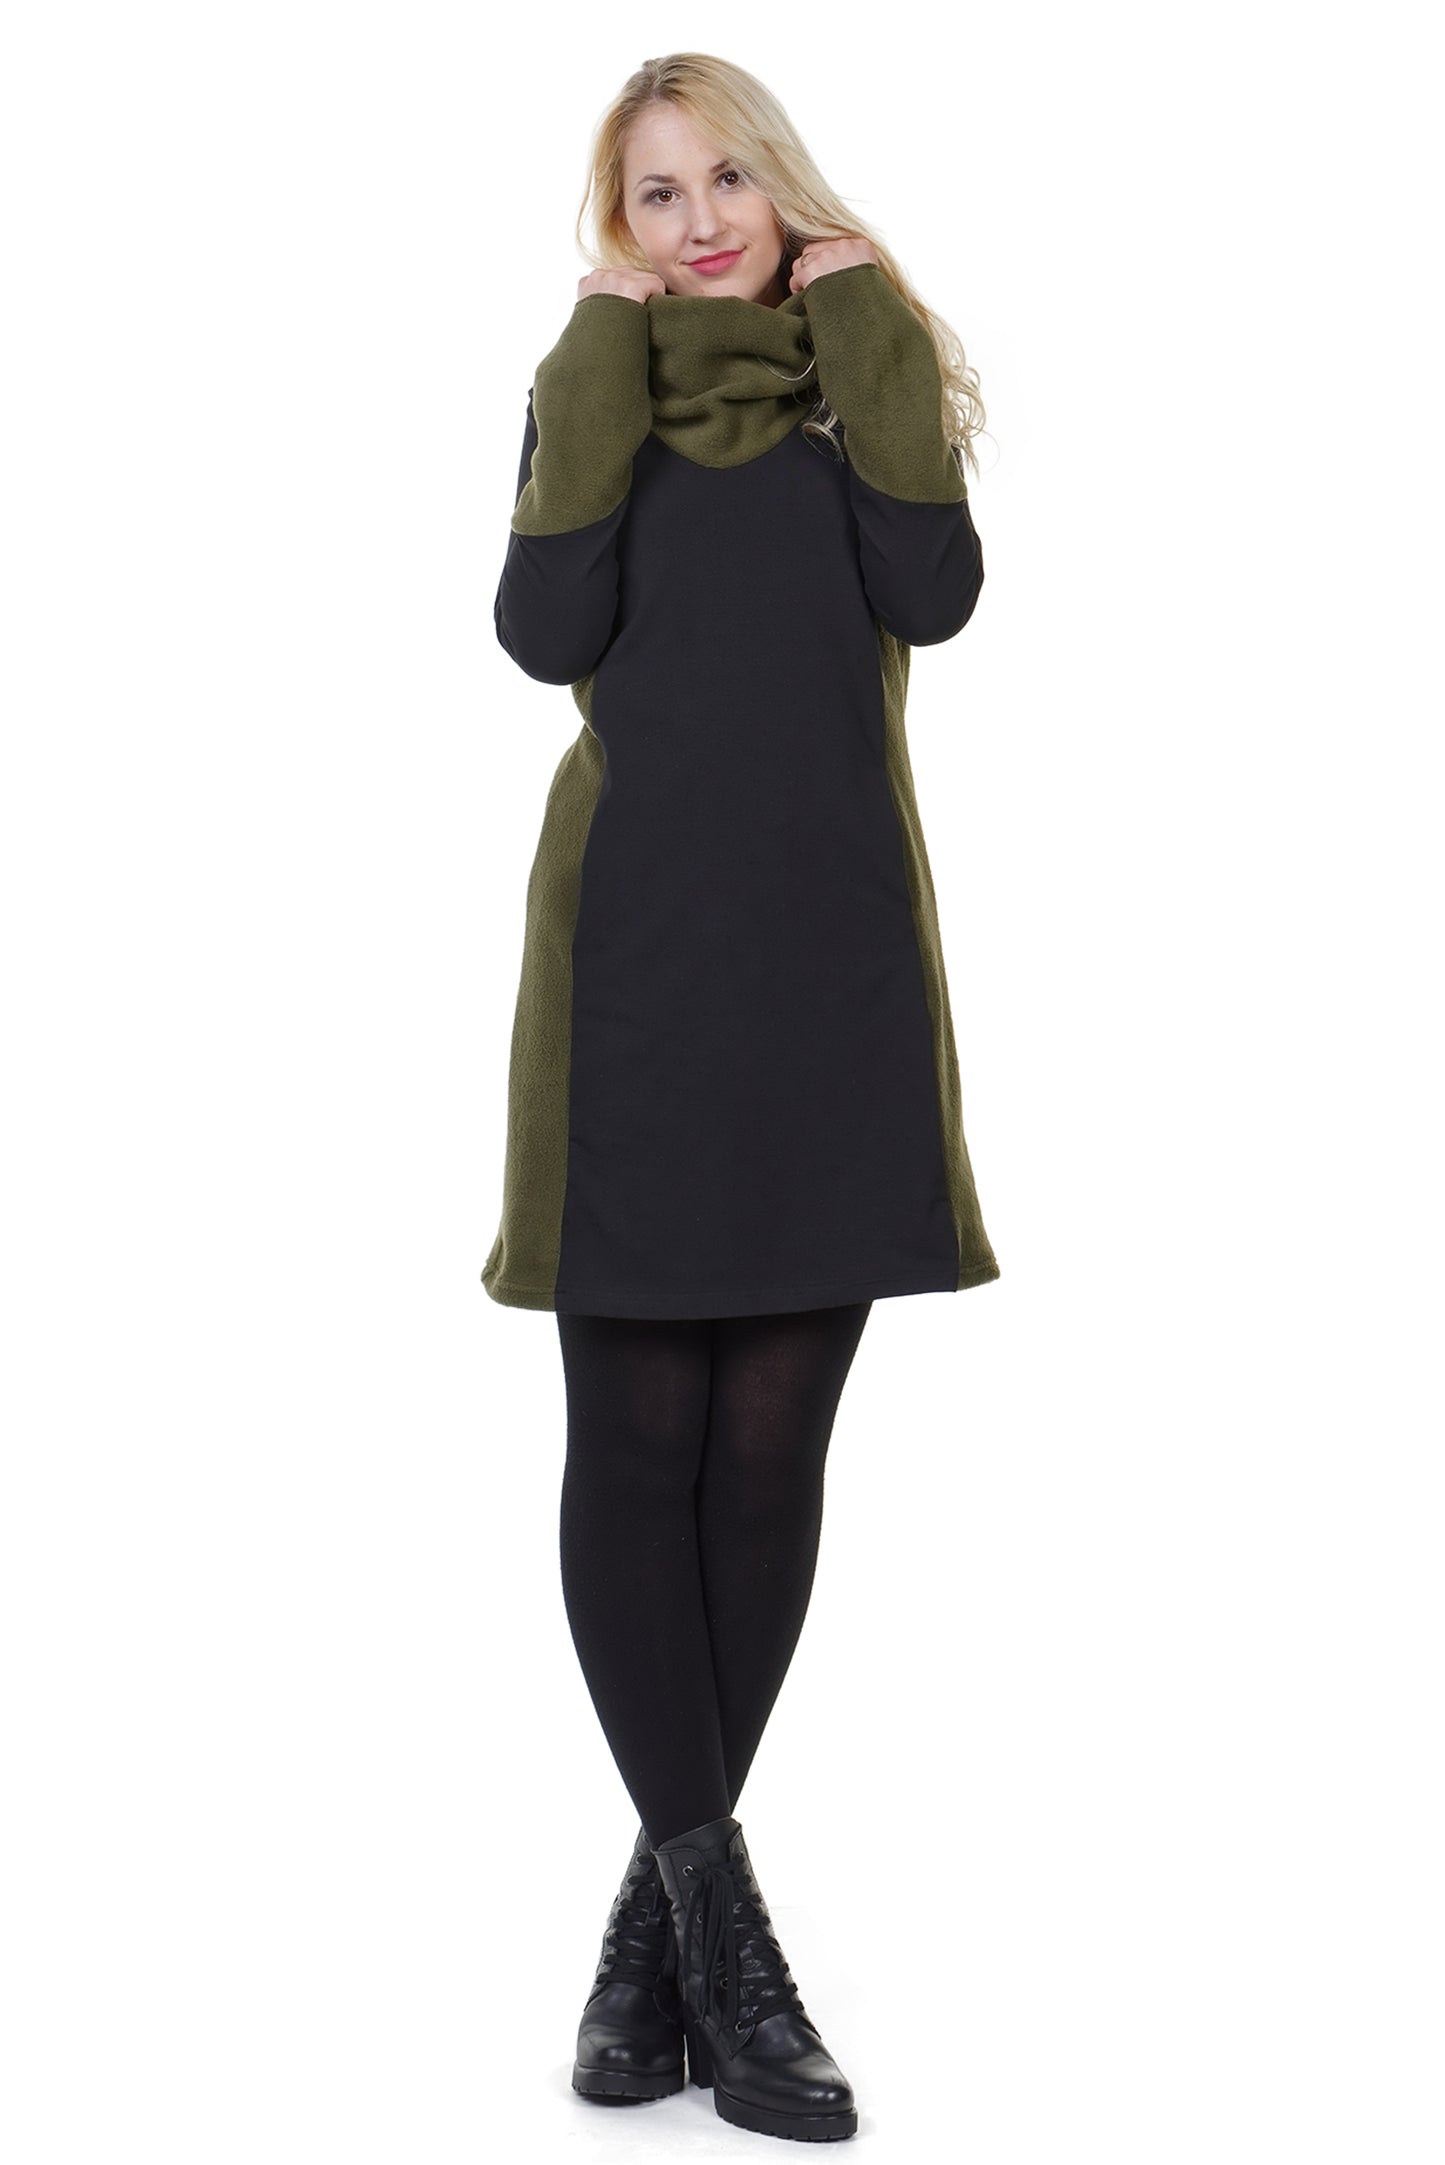 SALE Größe XS Schneekönigin Kleid schwarz grün